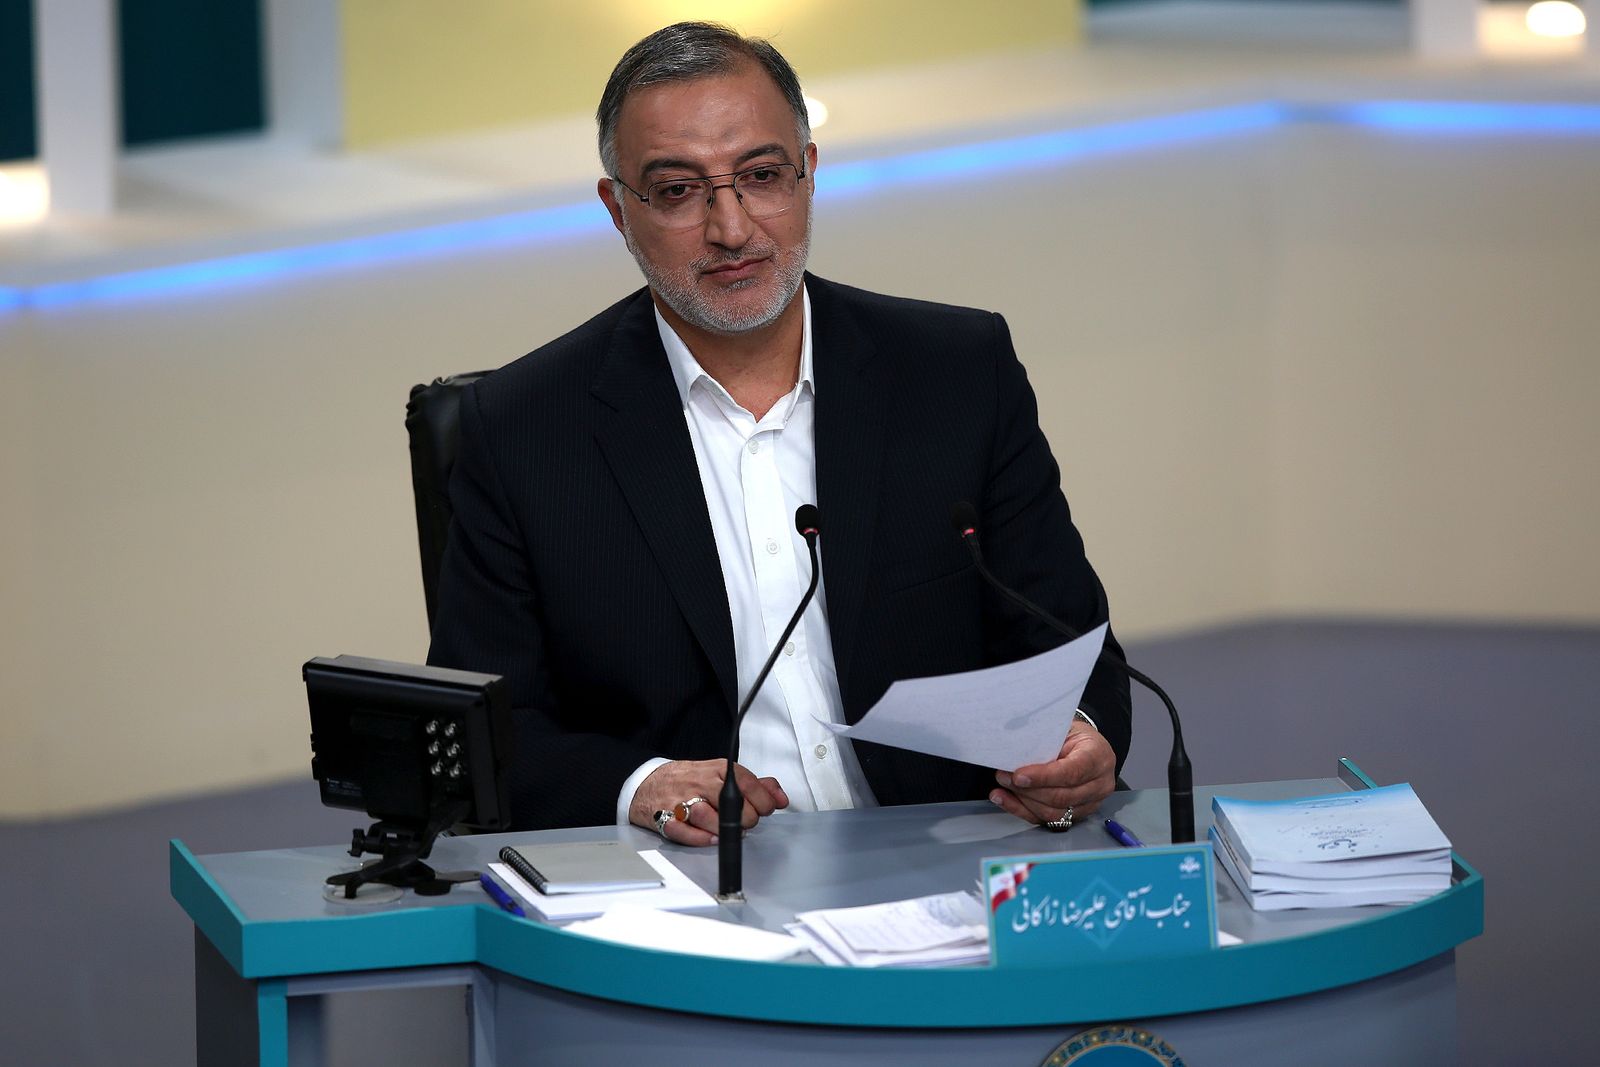 الرئيس الجديد لبلدية طهر ان علي رضا زاكاني خلال مناظرة انتخابية في طهران - 12 يونيو 2021 - REUTERS